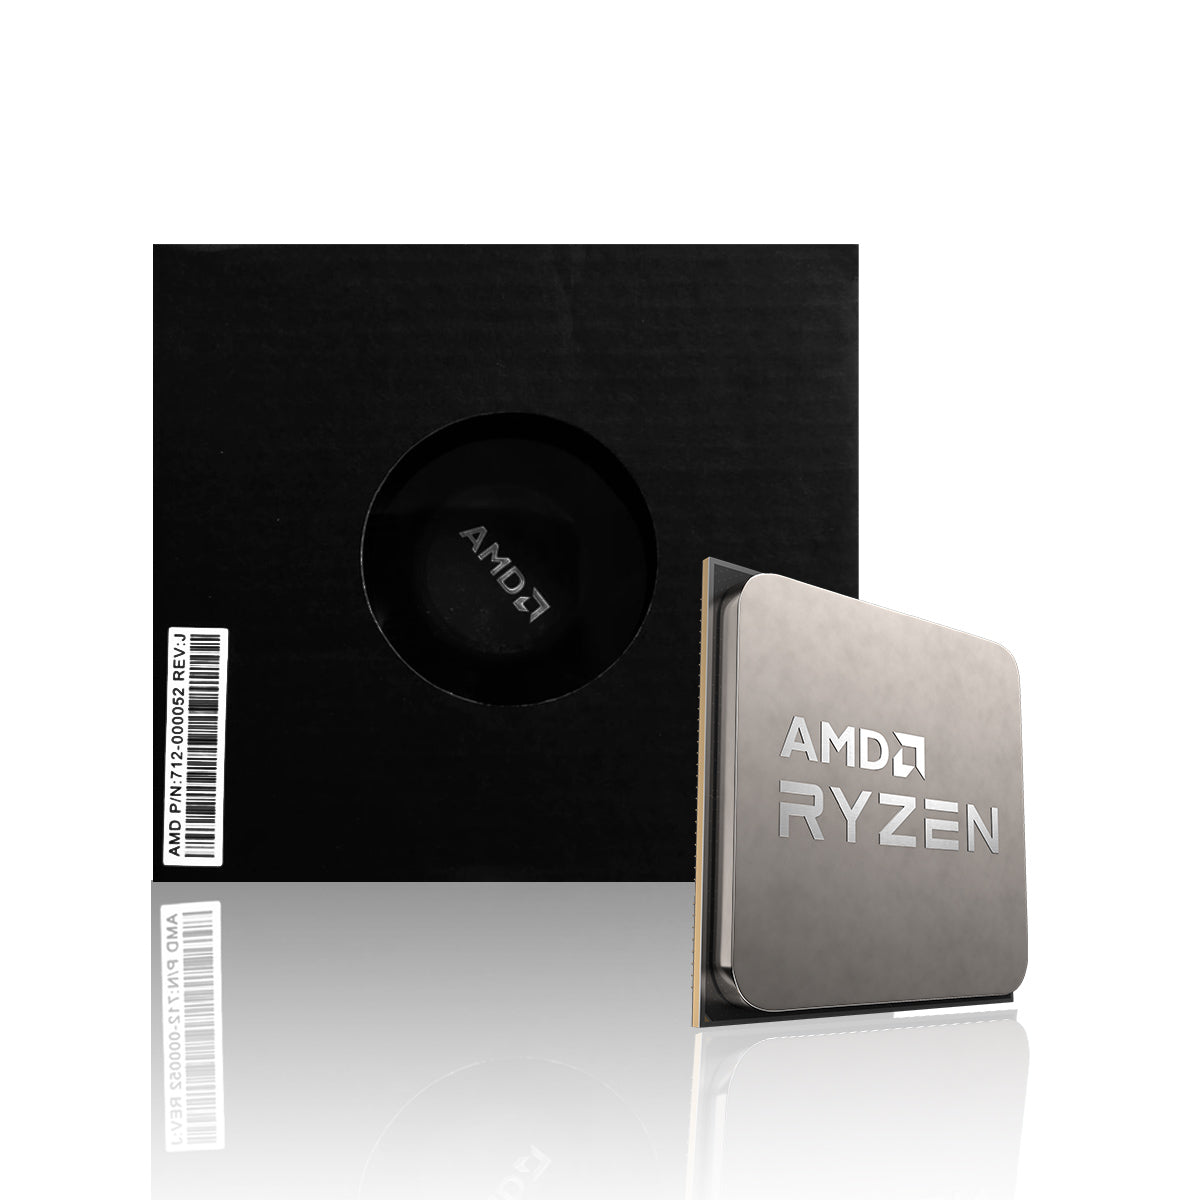 AMD Ryzen 3 3200G डेस्कटॉप प्रोसेसर 4 कोर 3.6GHz तक 6MB कैश AM4 सॉकेट - स्टॉक कूलर के साथ OEM पैक